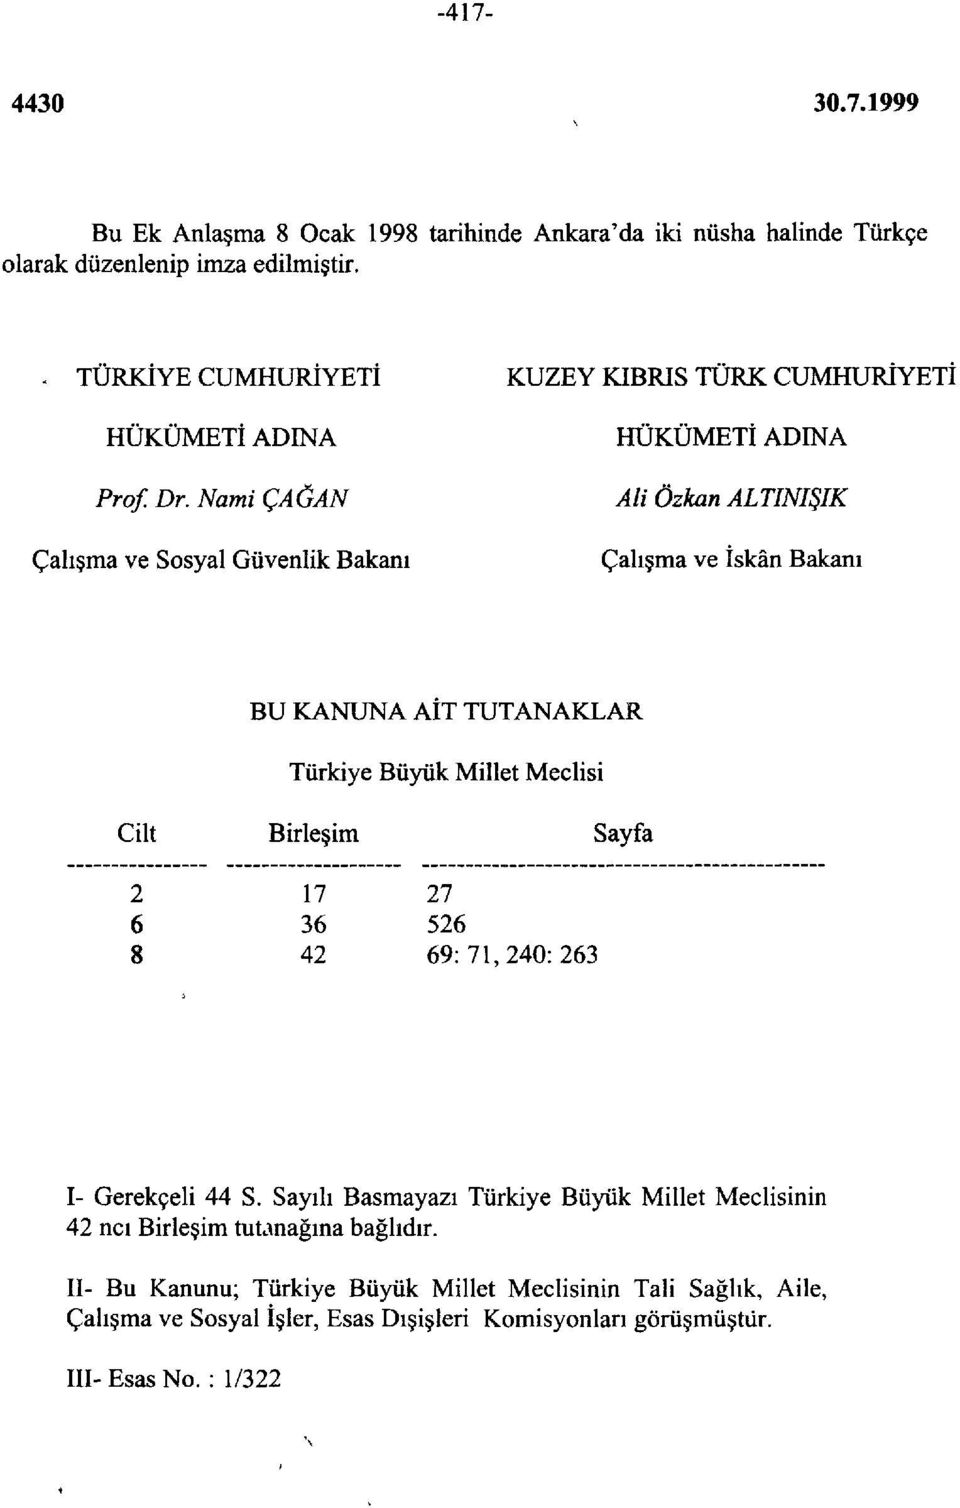 Türkiye Büyük Millet Meclisi Cilt 2 6 8 Birleşim 17 36 42 27 526 69:71,240:263 Sayfa I- Gerekçeli 44 S.